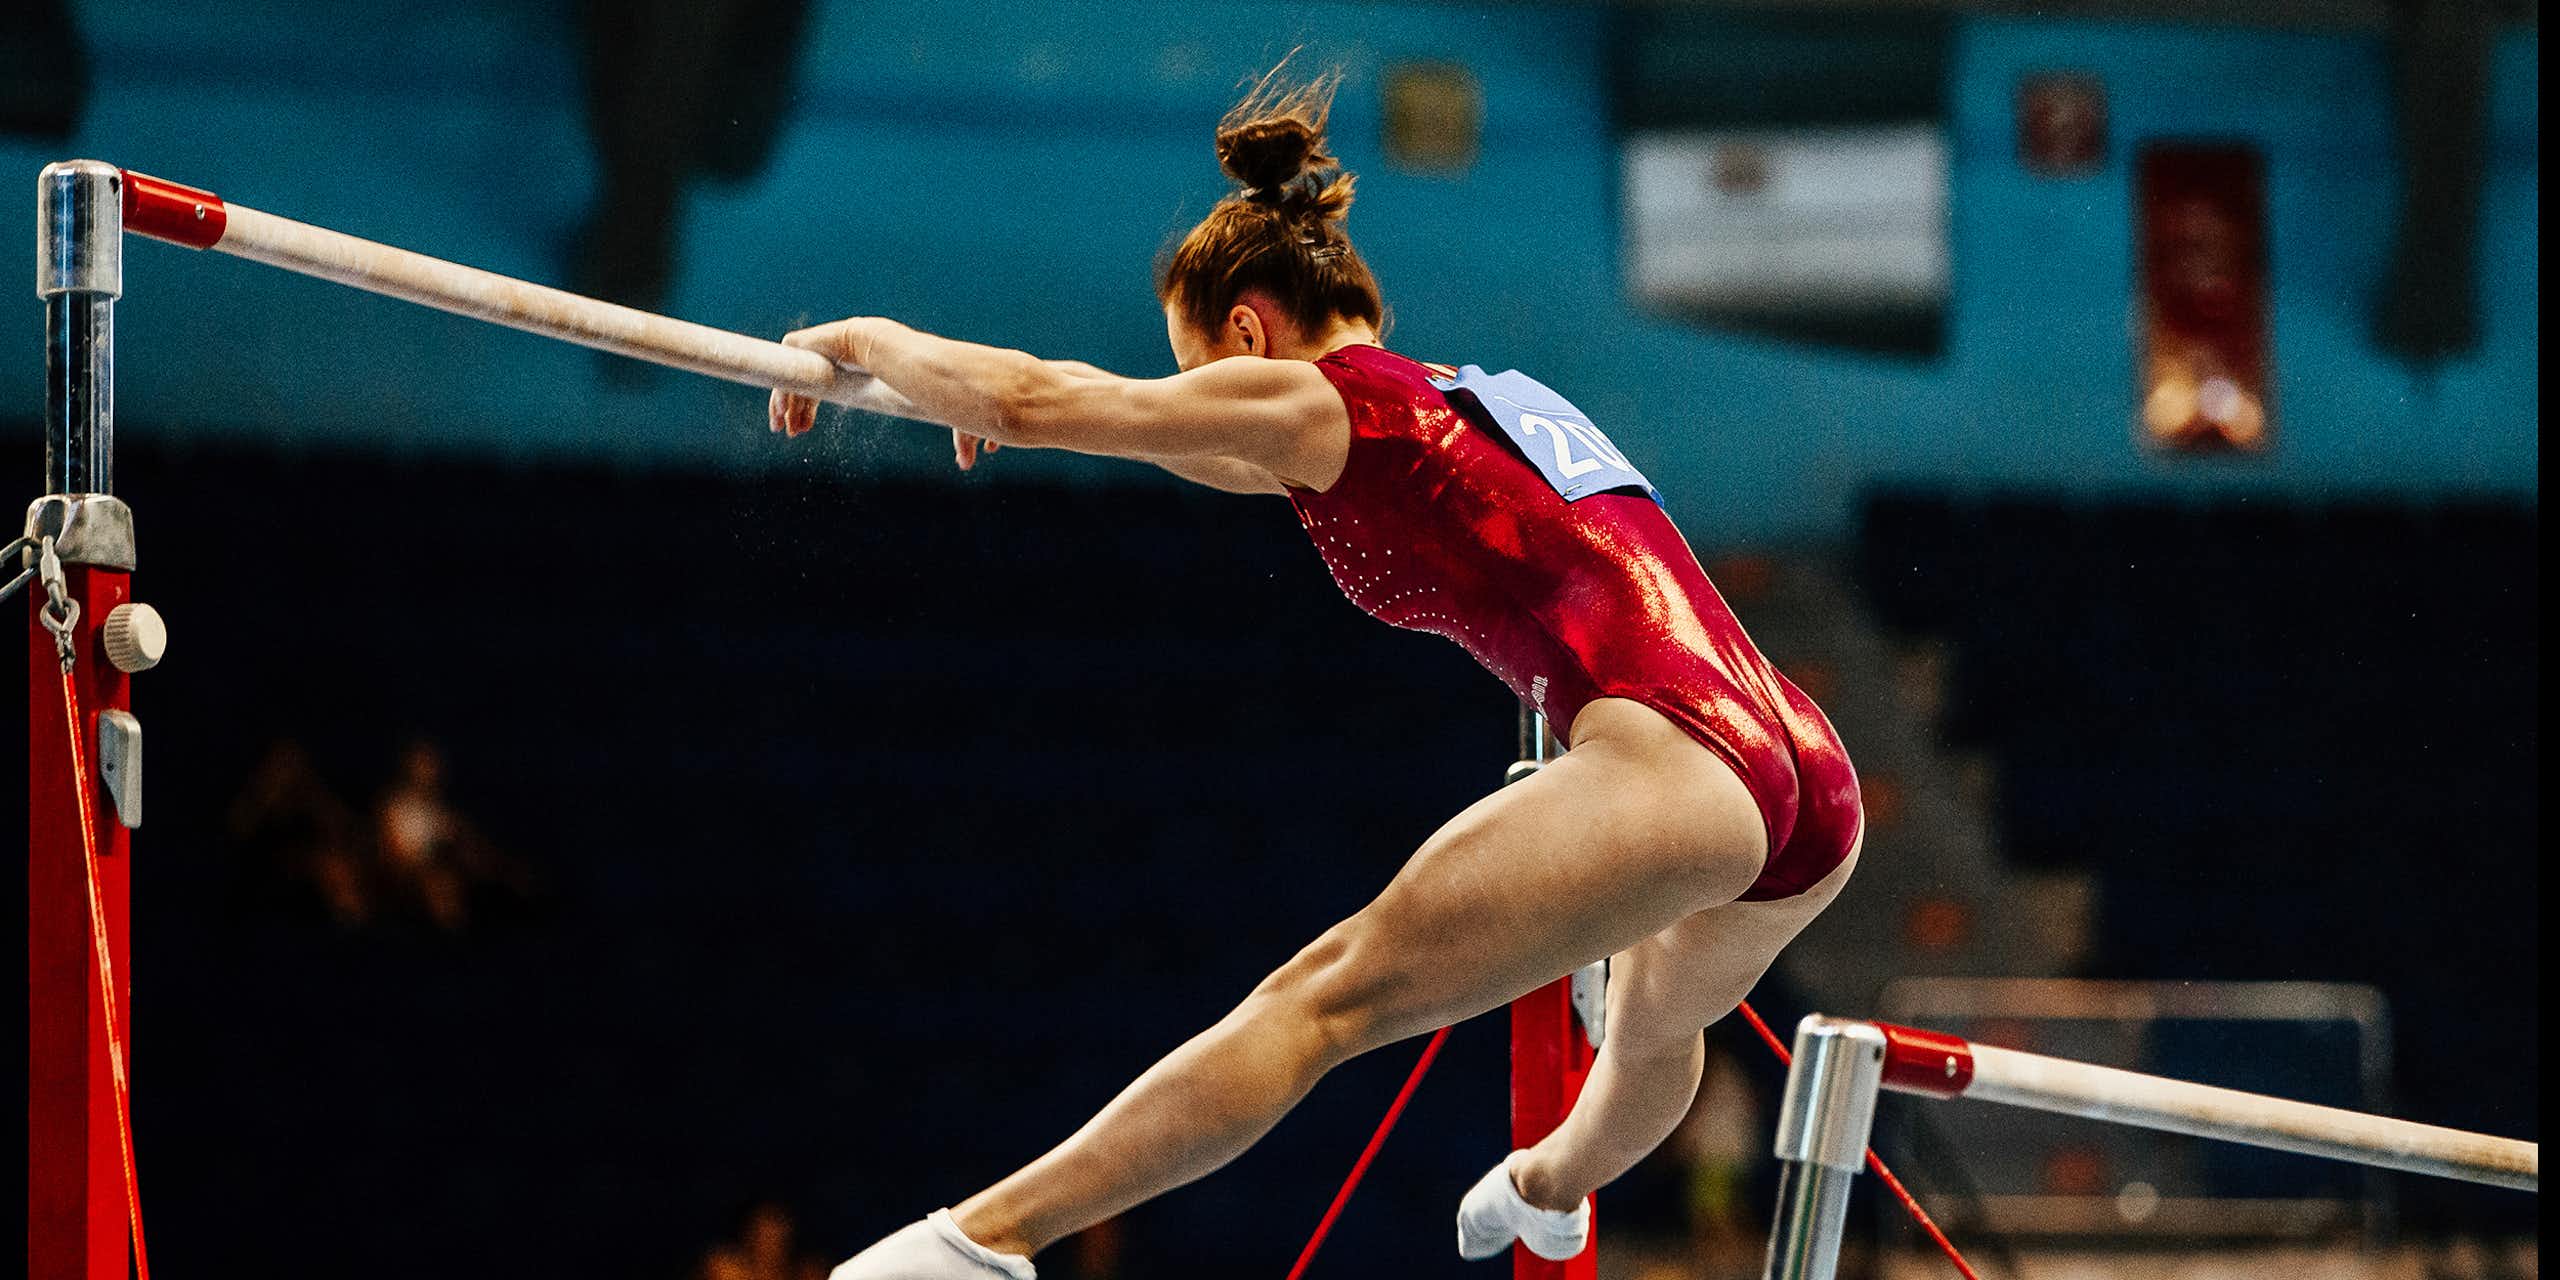 Une gymnaste effectue un exercice sur des barres asymétriques lors d'une compétition.